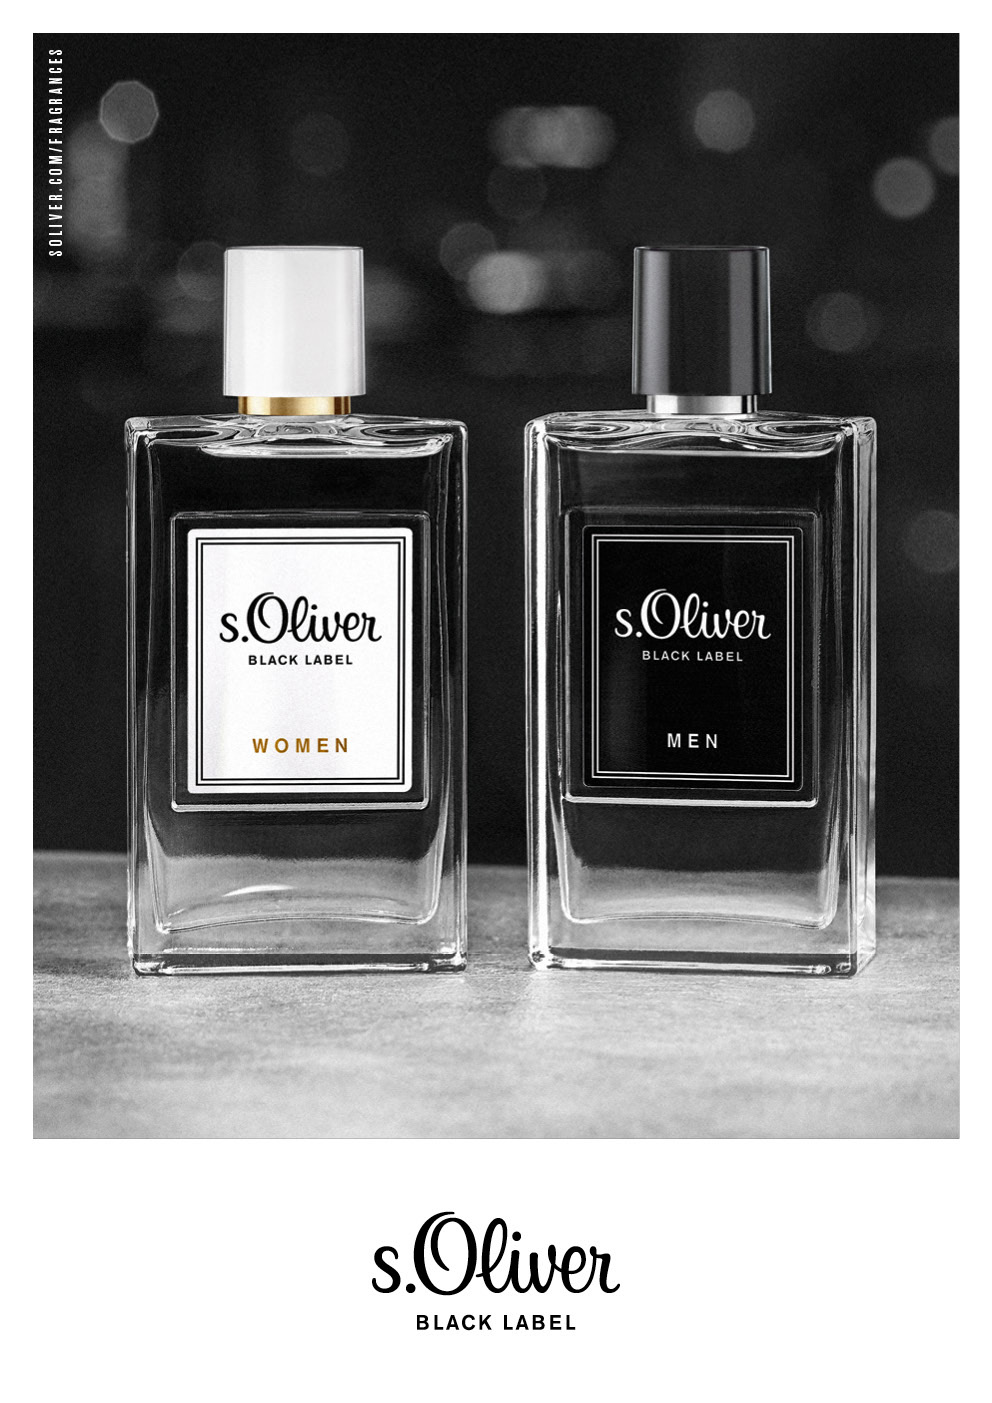 S.Oliver Black Label Men Eau de Toilette 30ml